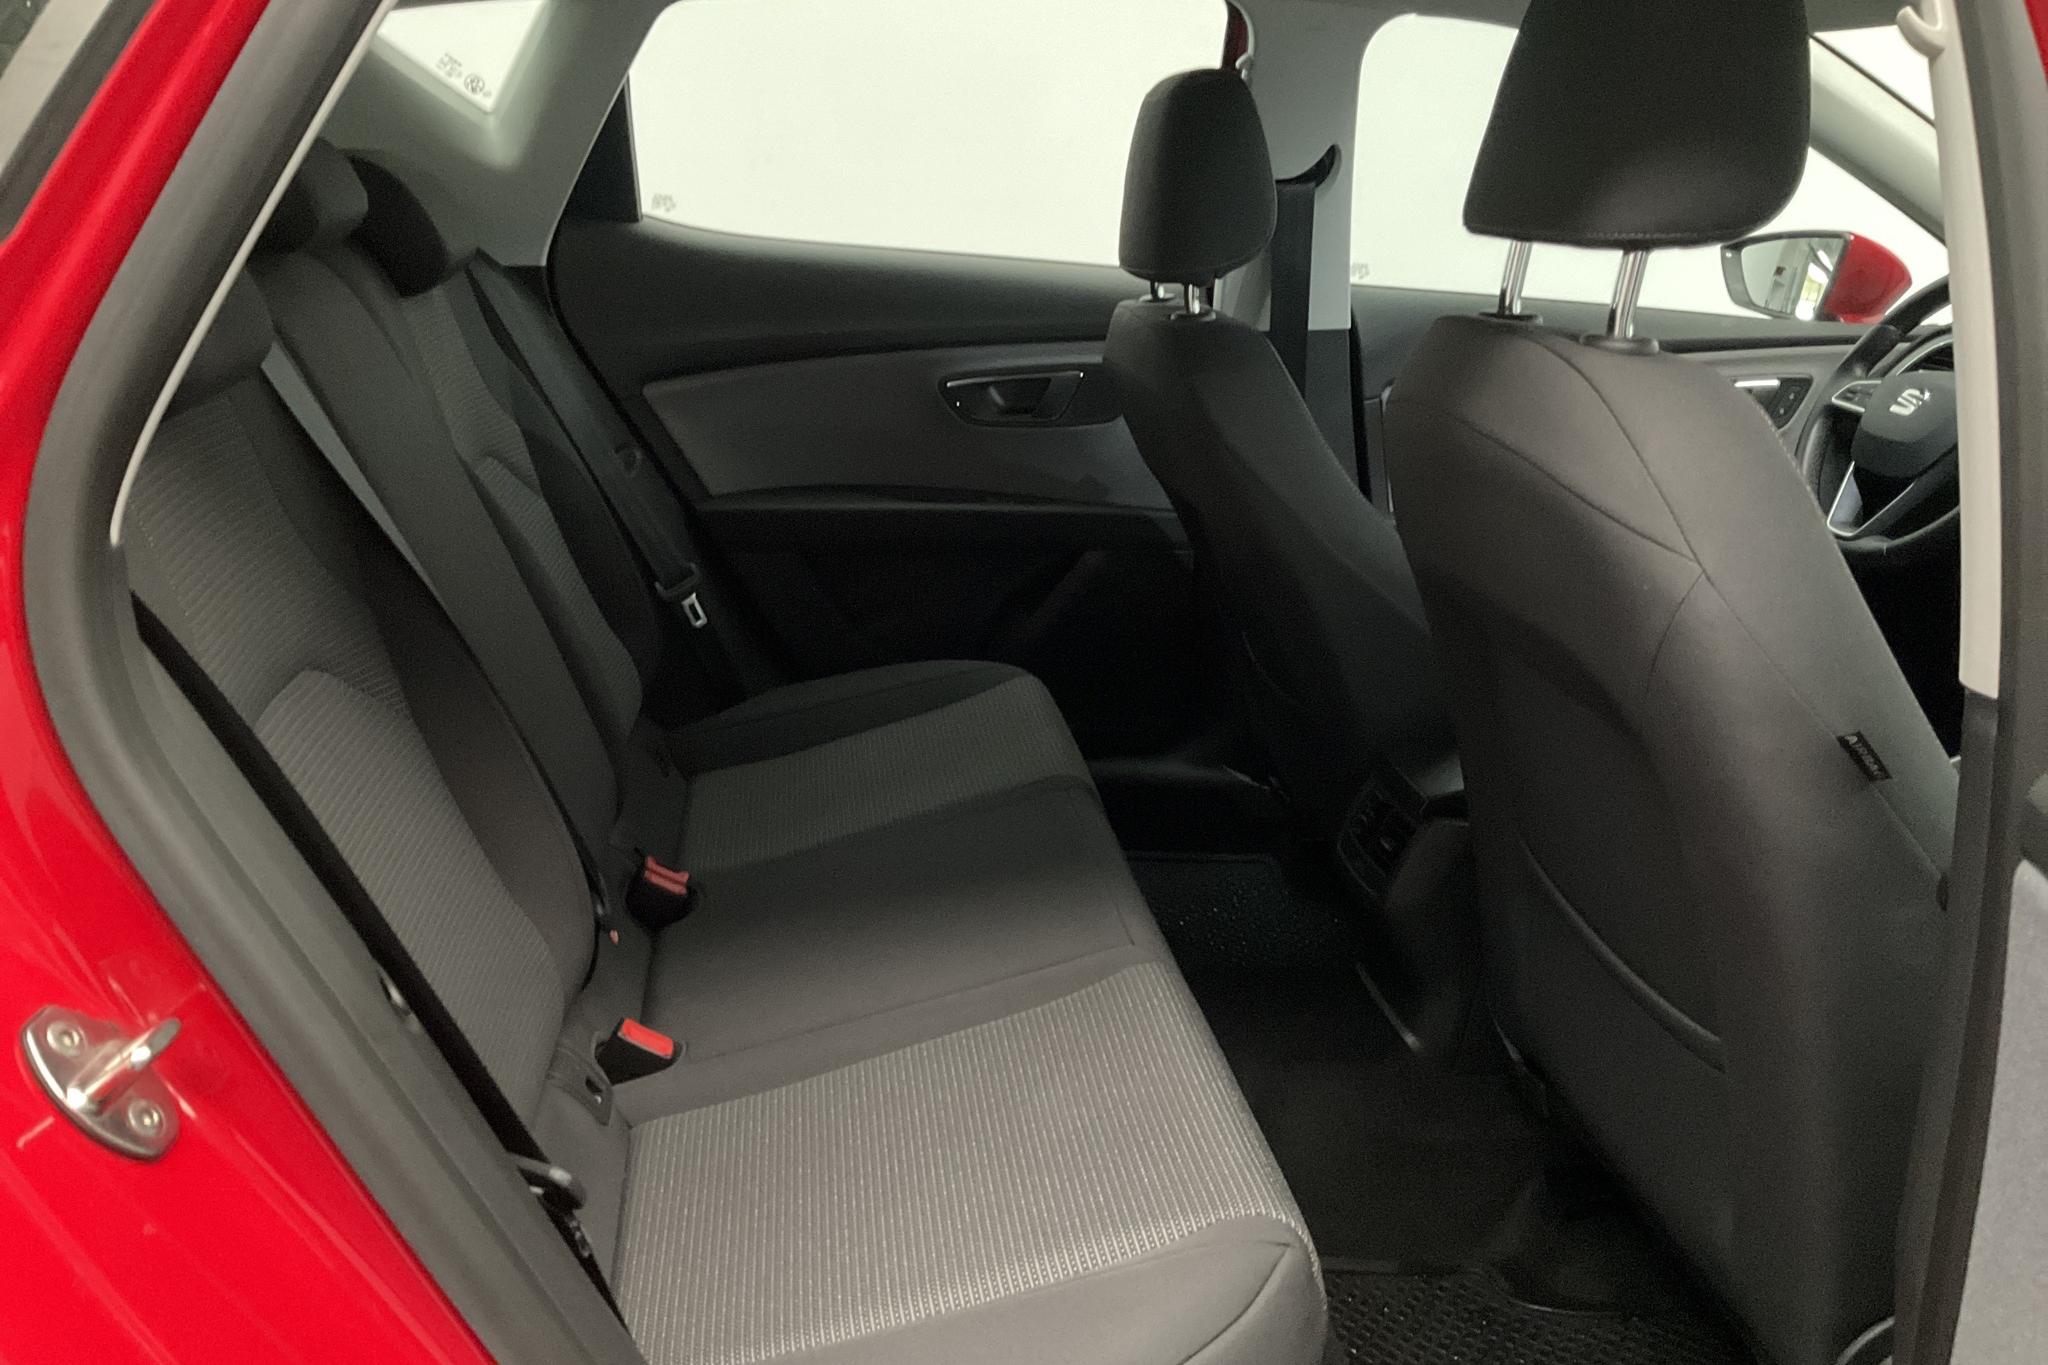 Seat Leon 1.6 TDI 5dr (115hk) - 10 960 km - Manual - red - 2020